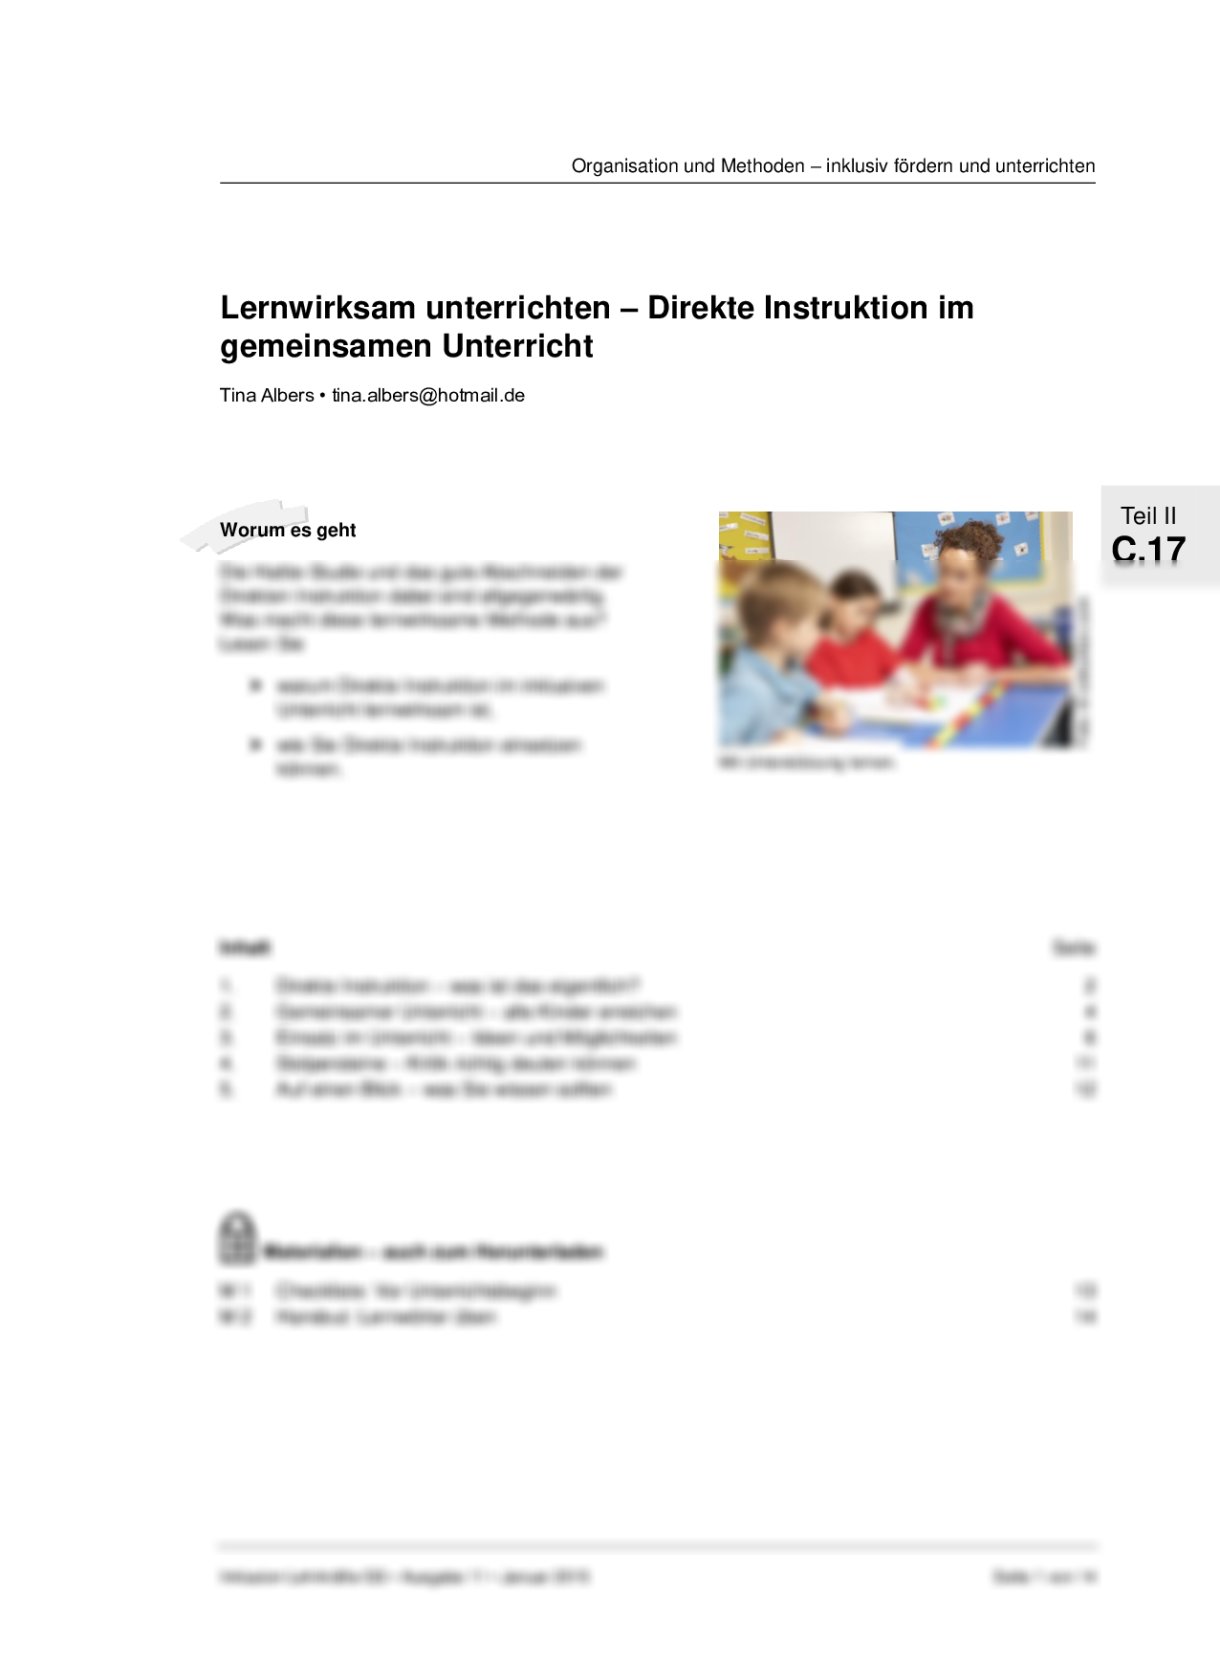 Direkte Instruktion im gemeinsamen Unterricht - Seite 1